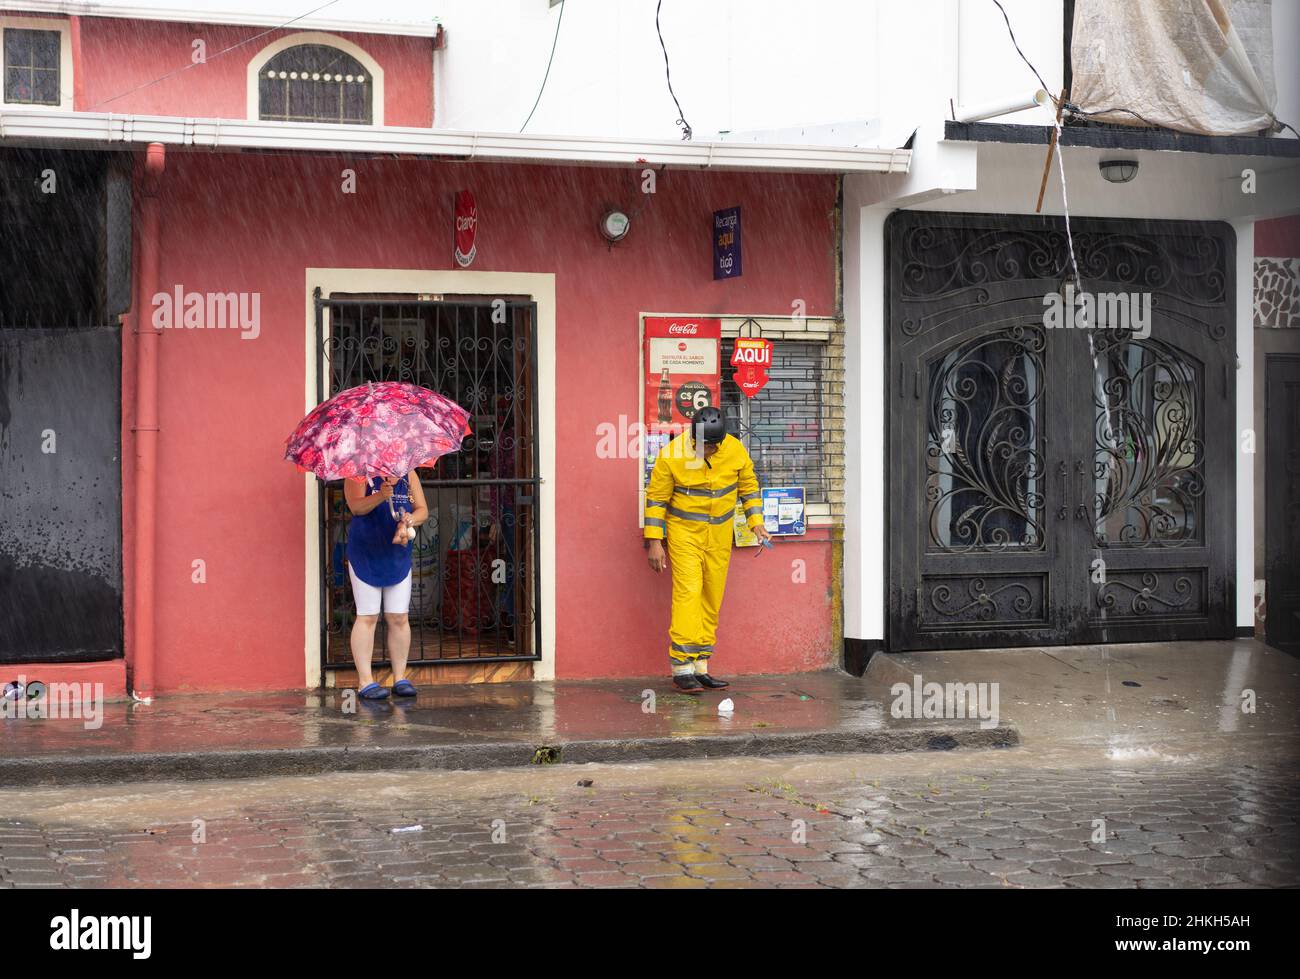 Deux personnes attendent sous le toit, espérant une pause dans la pluie de l'ouragan Iota à Jinotega, au Nicaragua. Banque D'Images